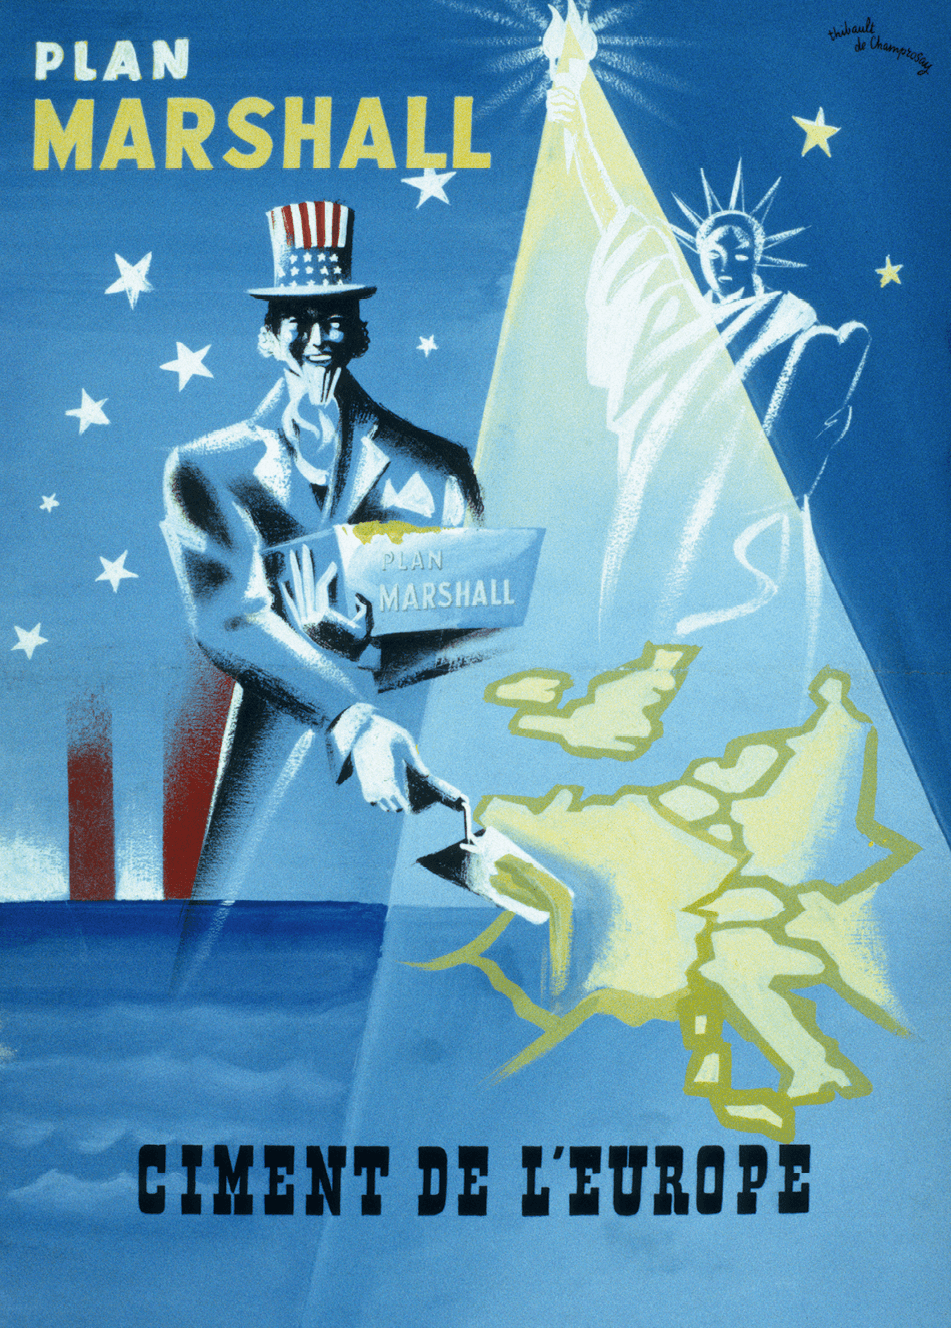 Le plan Marshall, symbole de prospérité et de liberté